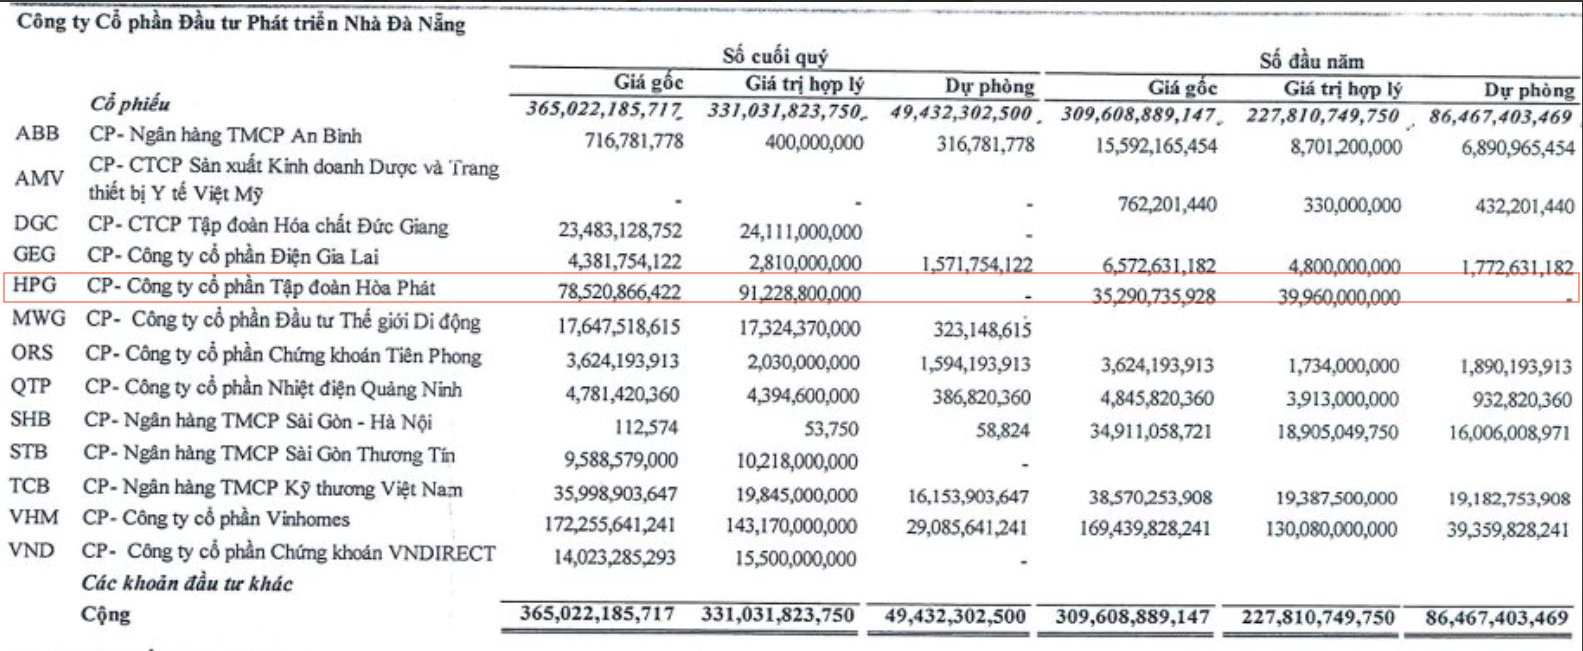 
Theo như ghi nhận tại thời điểm 31/3/2023, Nhà Đà Nẵng đang ghi nhận mức lãi 13 tỷ đồng nhờ khoản đầu tư vào HPG, tương đương với 17%
